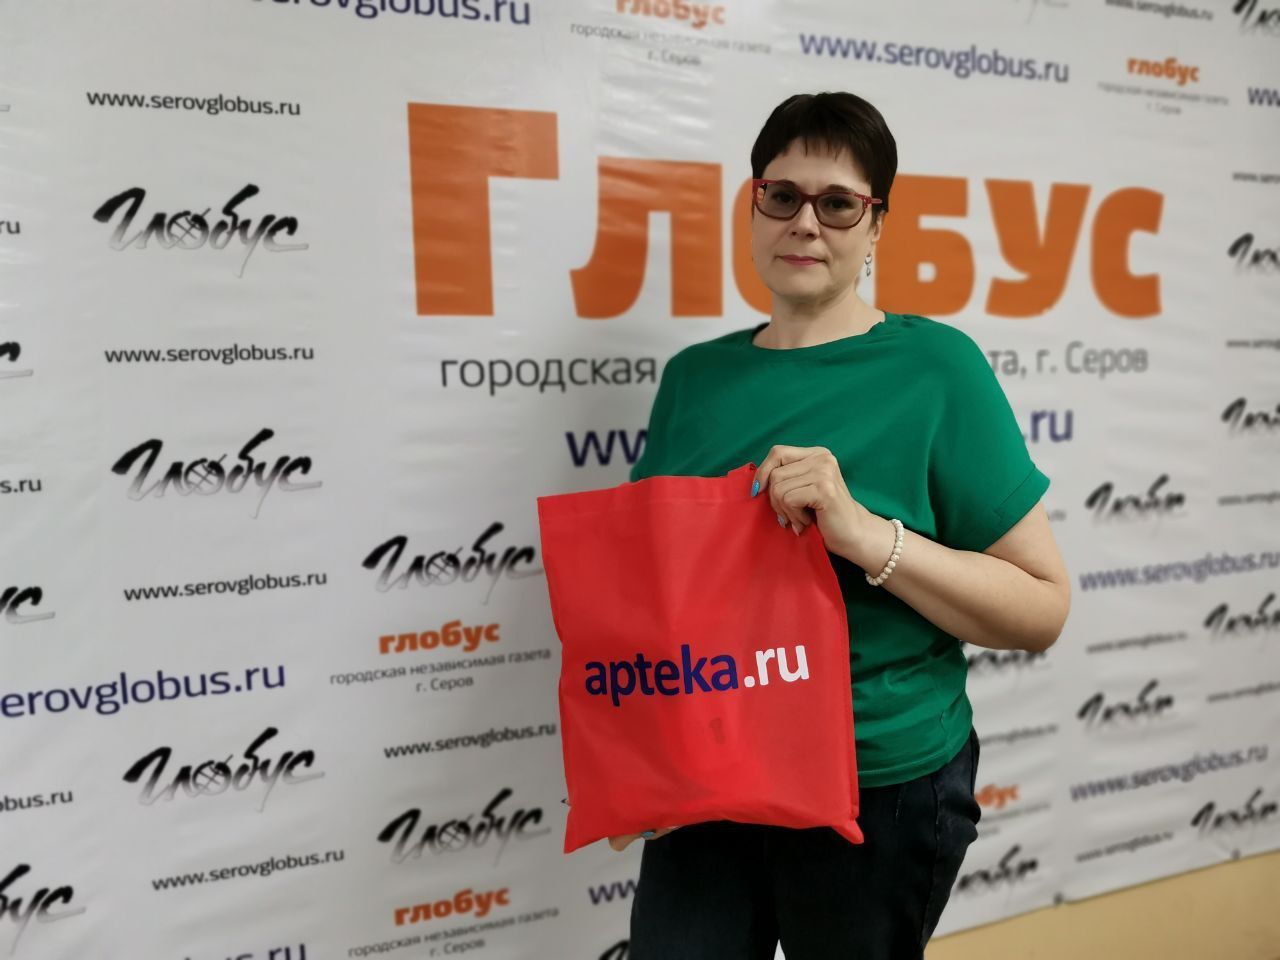 Победительница розыгрыша газеты «Глобус» получила подарок от интернет-сервиса Аптека.ру